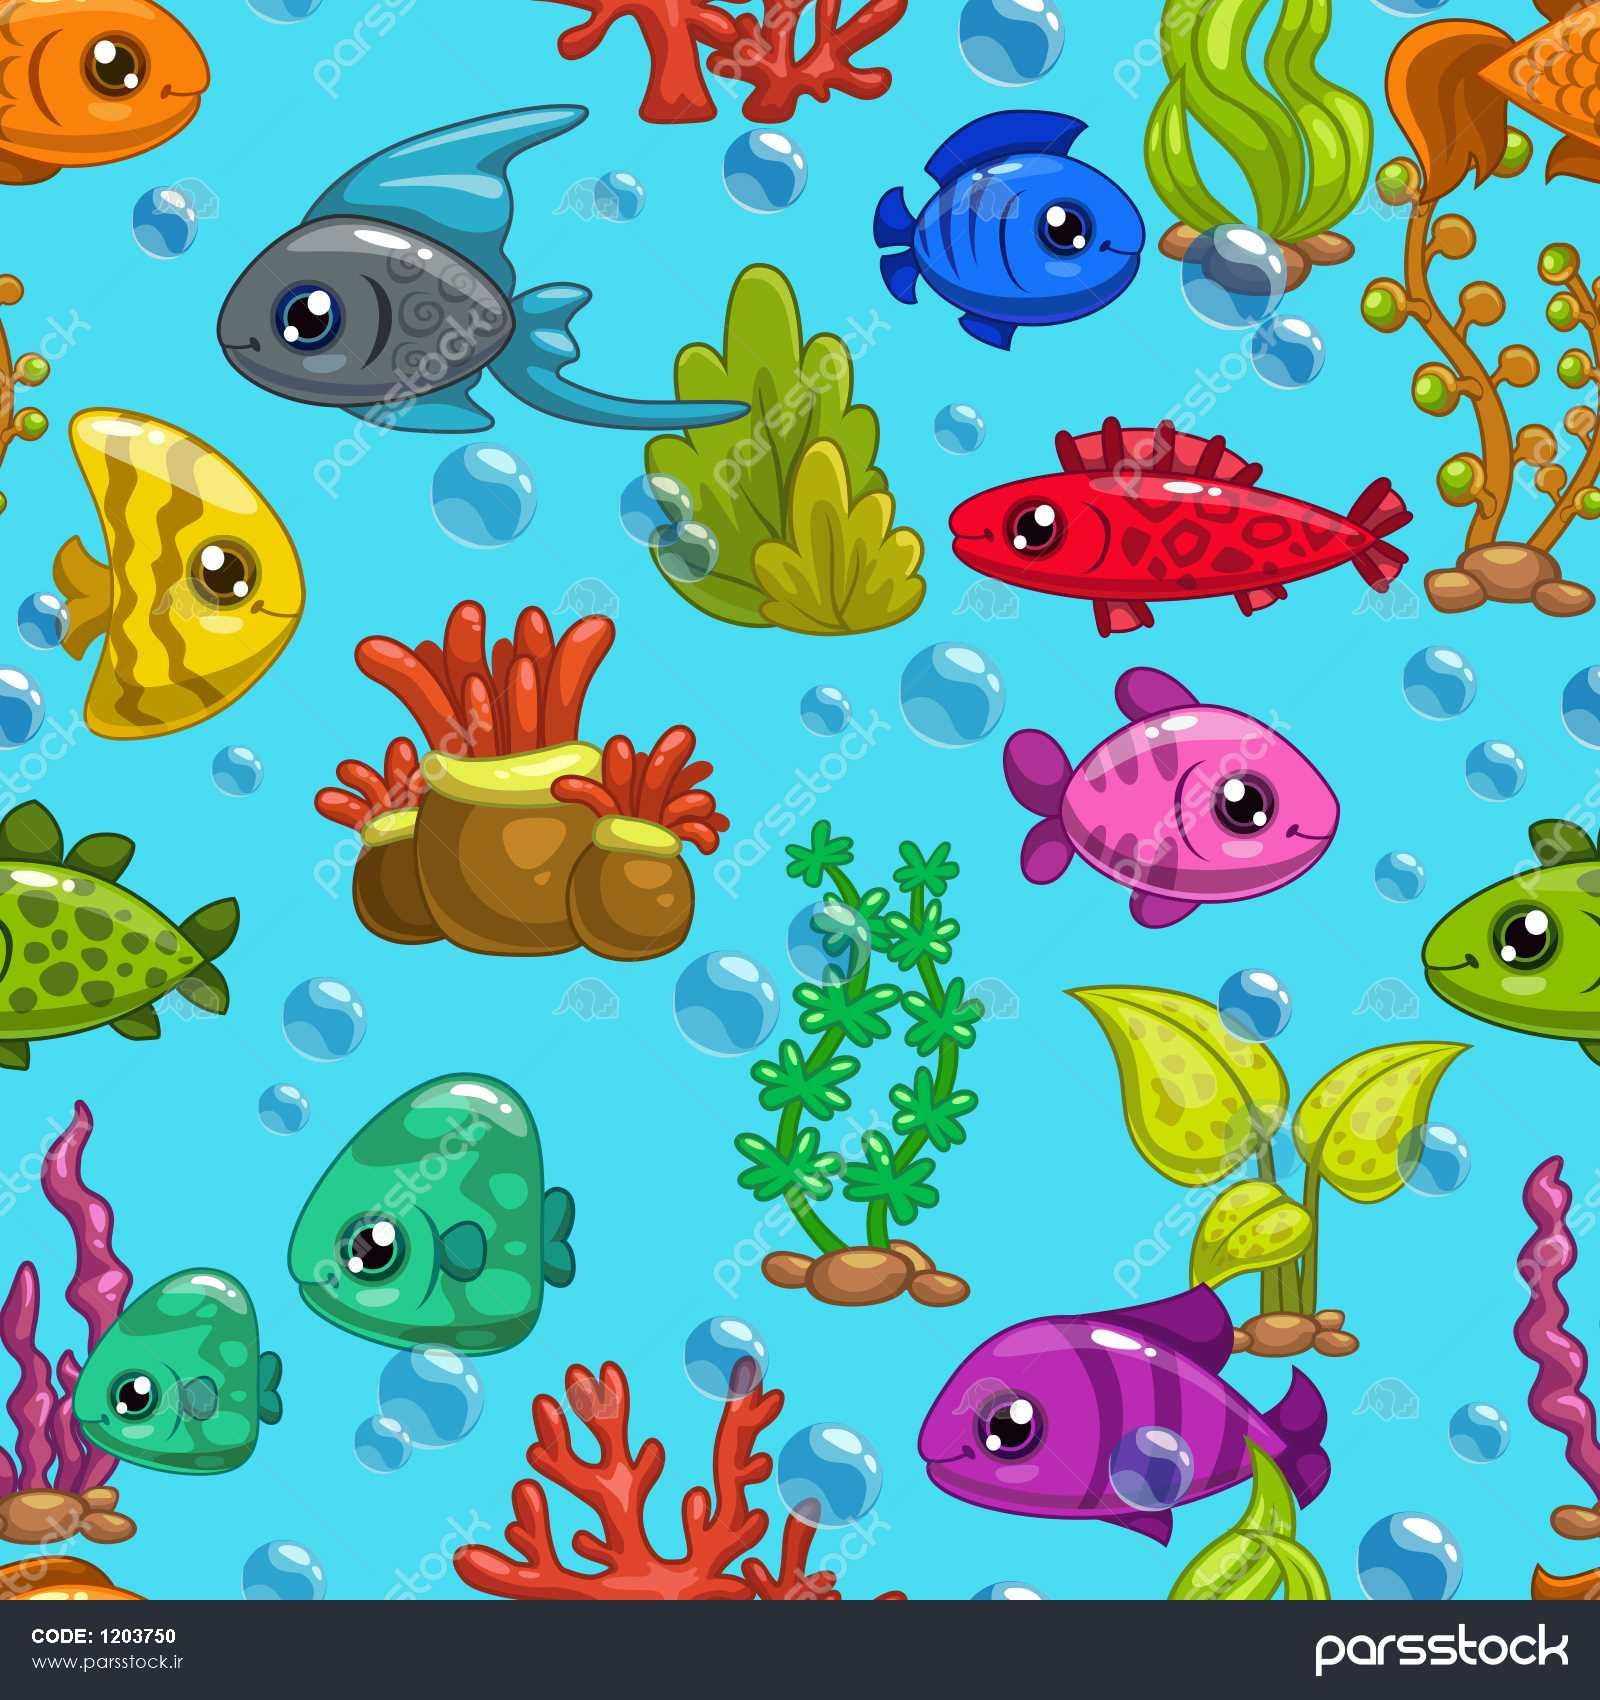 نقاشی ماهی های زیر دریا